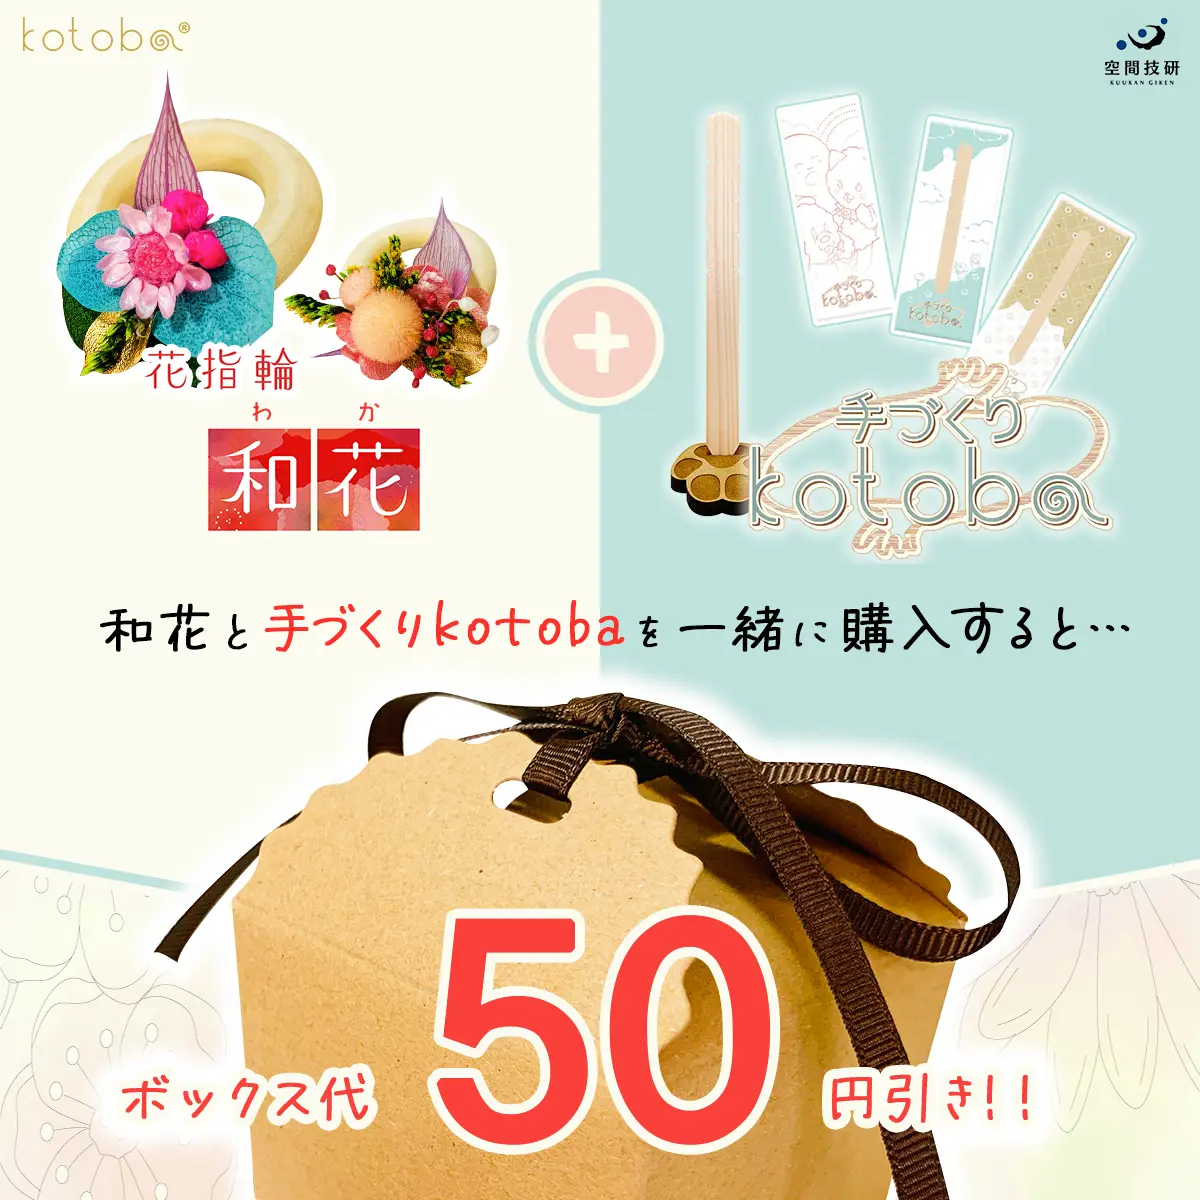 50円引きキャンペーンのご案内画像です。和花と手づくりkotobaを一緒に購入すると、ボックス代50円分が無料になります。ぜひ和花と手づくりkotobaを合わせてご購入ください